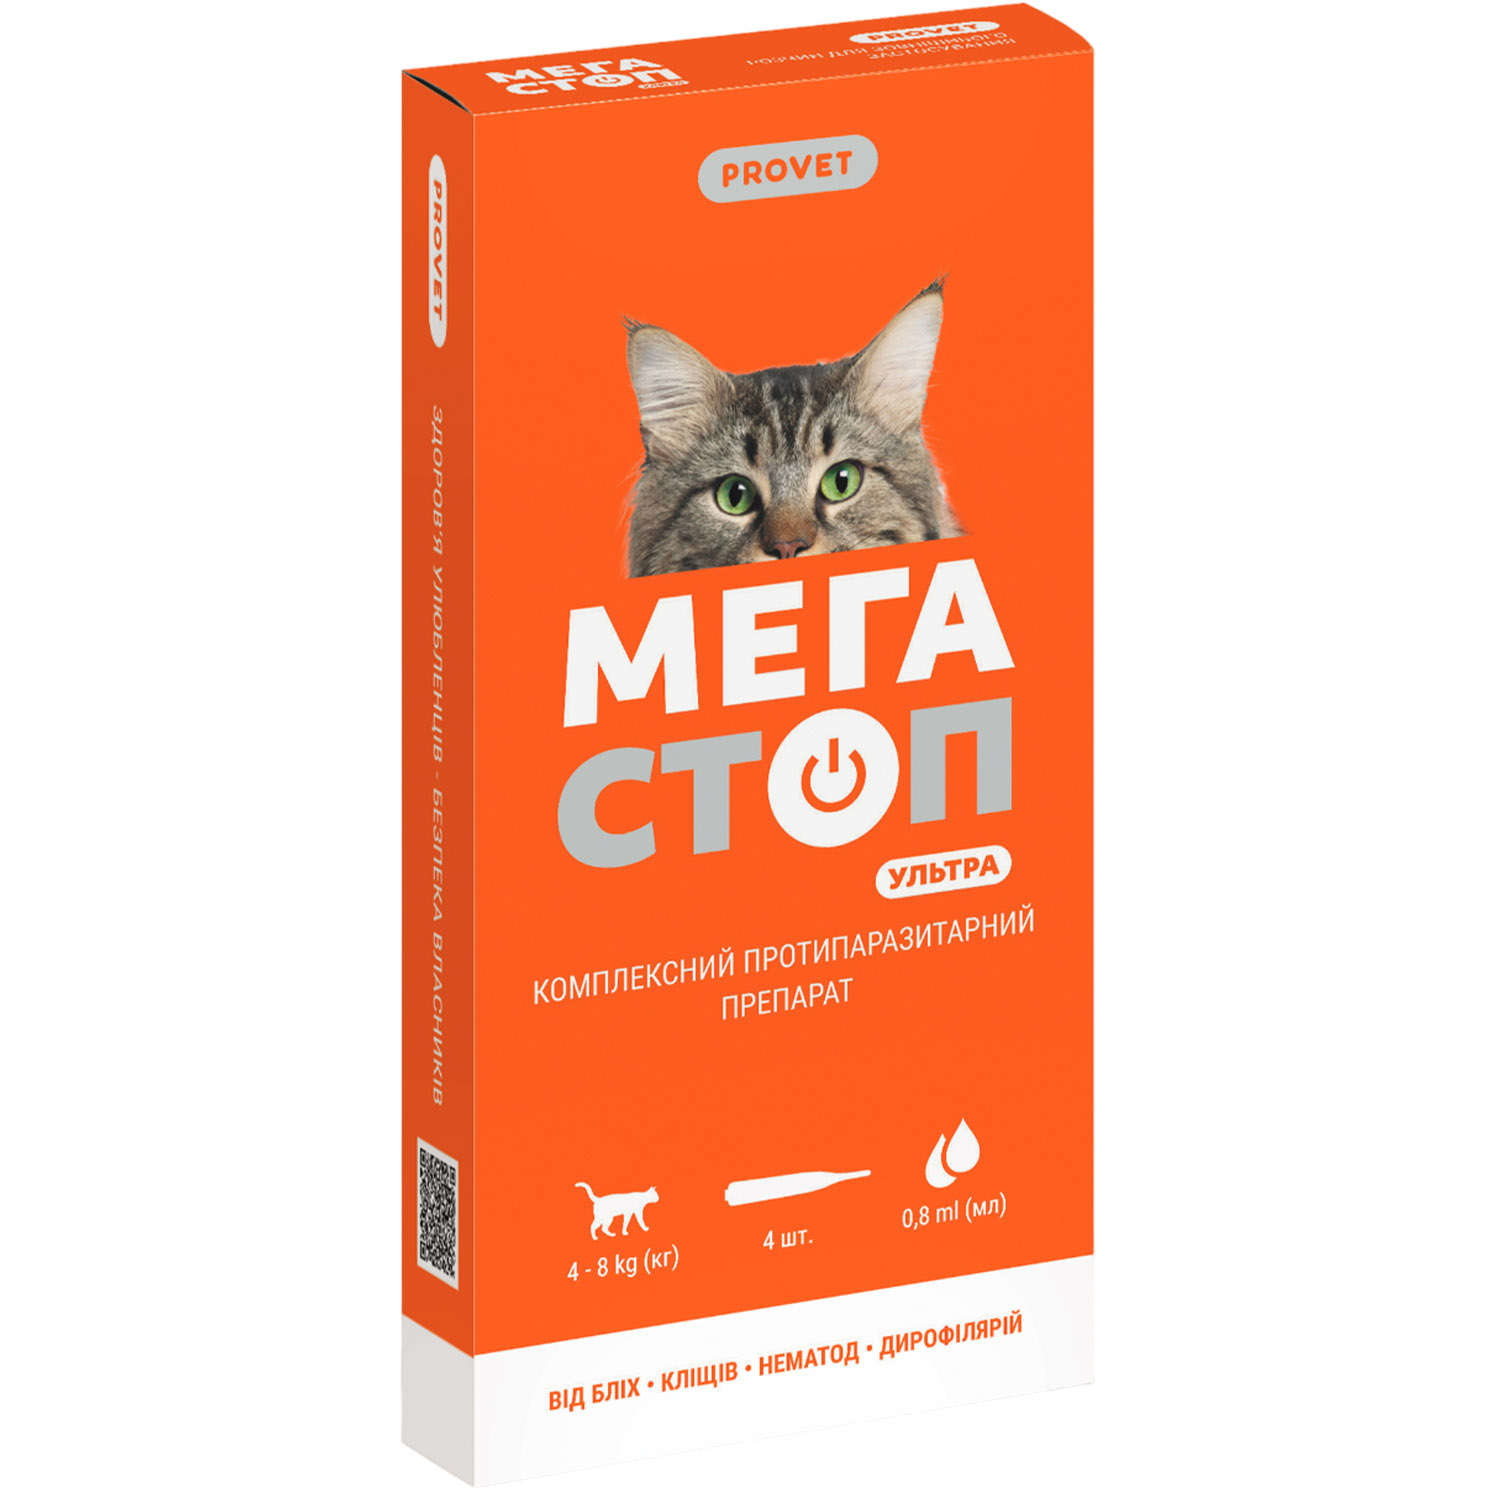 Комплексный противопаразитарный препарат ProVET Мегастоп Ультра для кошек весом 4-8 кг 4 пипетки по 0.8 мл - фото 1